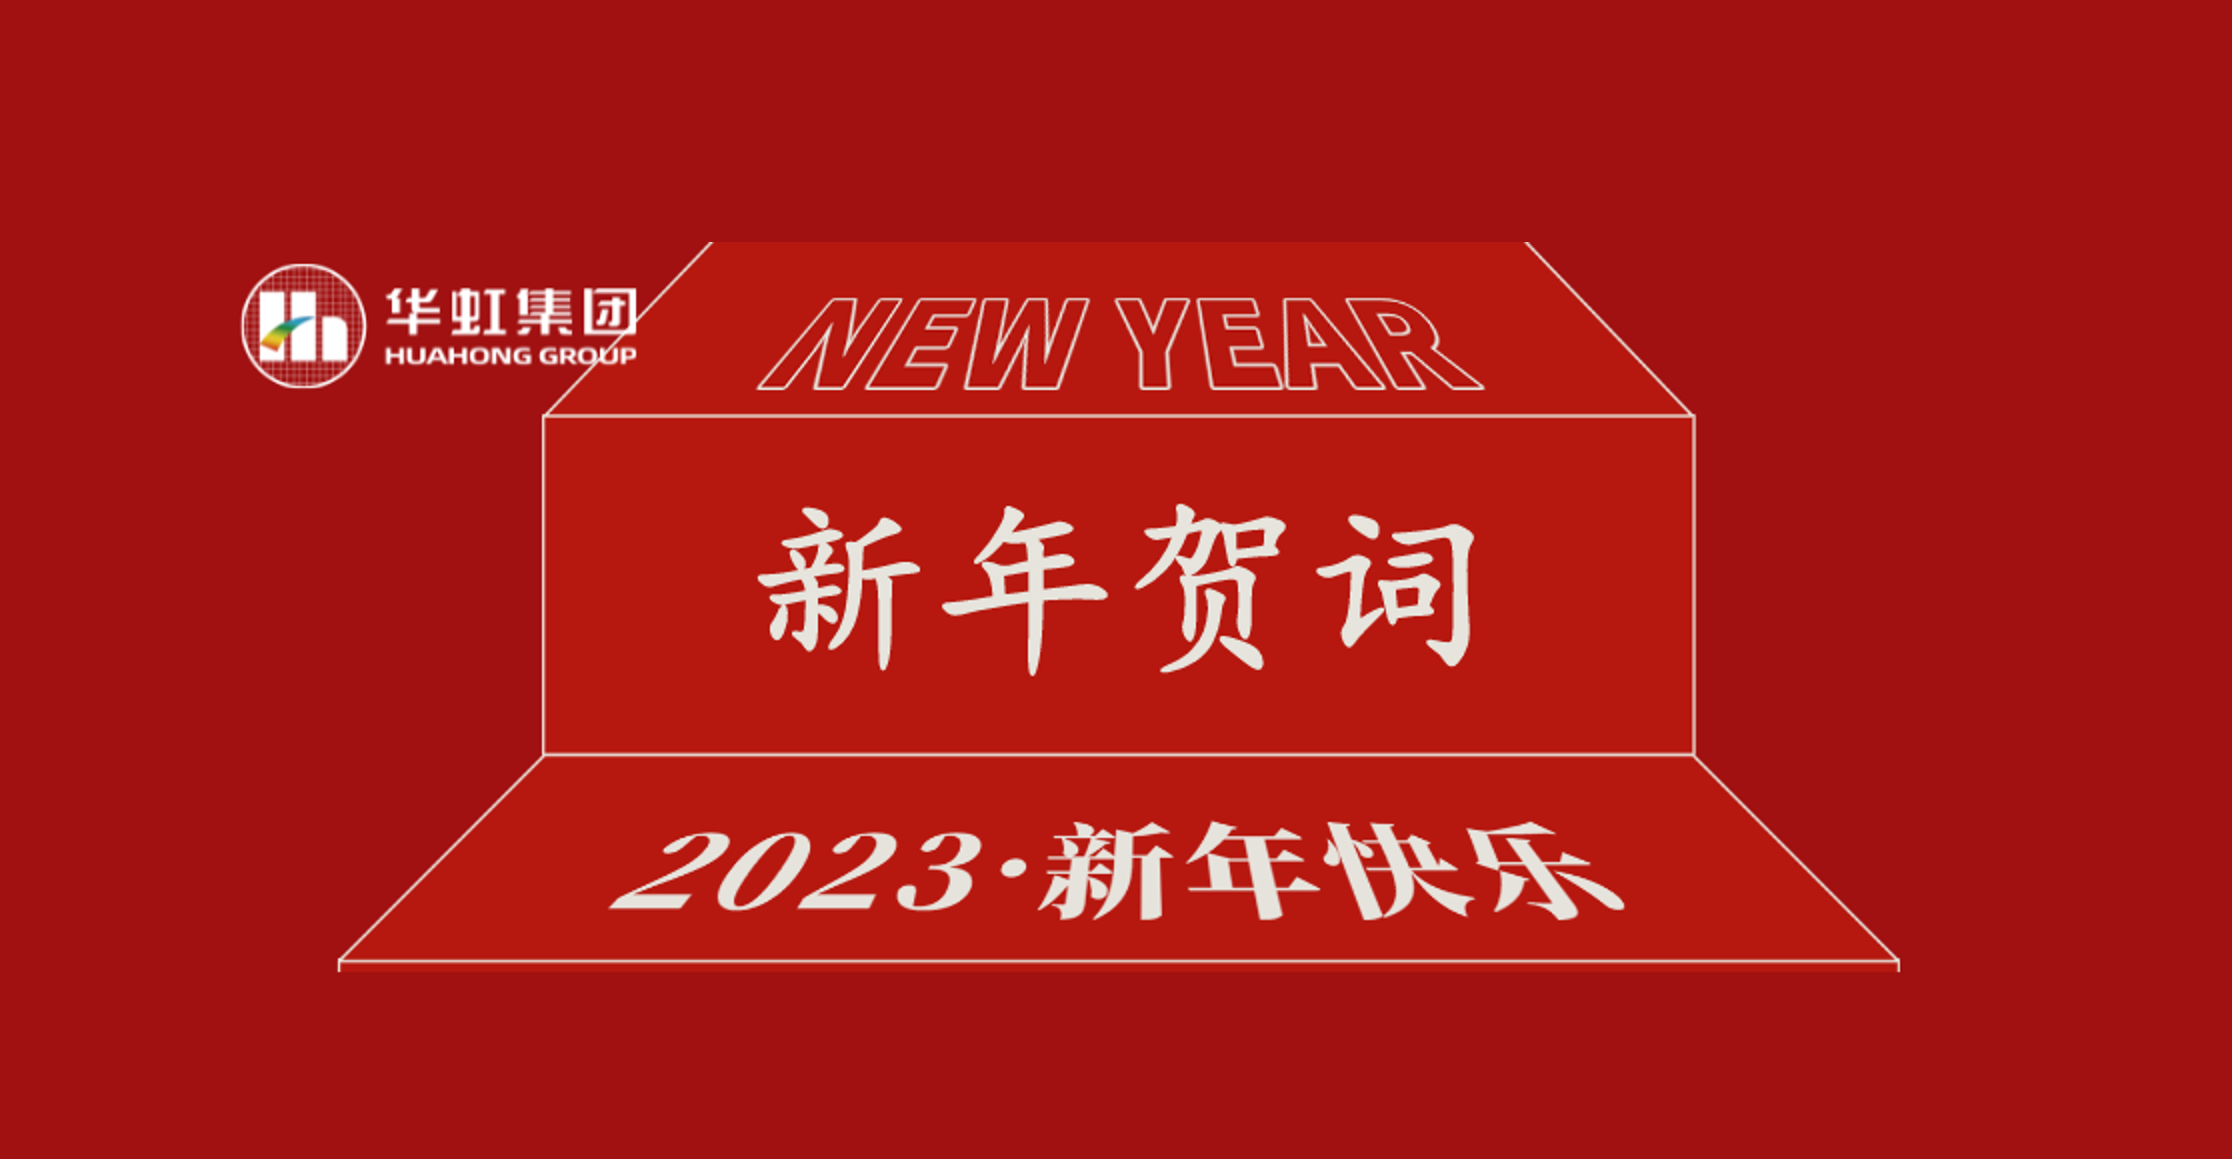 pg电子娱乐十大平台·(中国)官方网站党委书记、董事长张素心2023年新年贺词